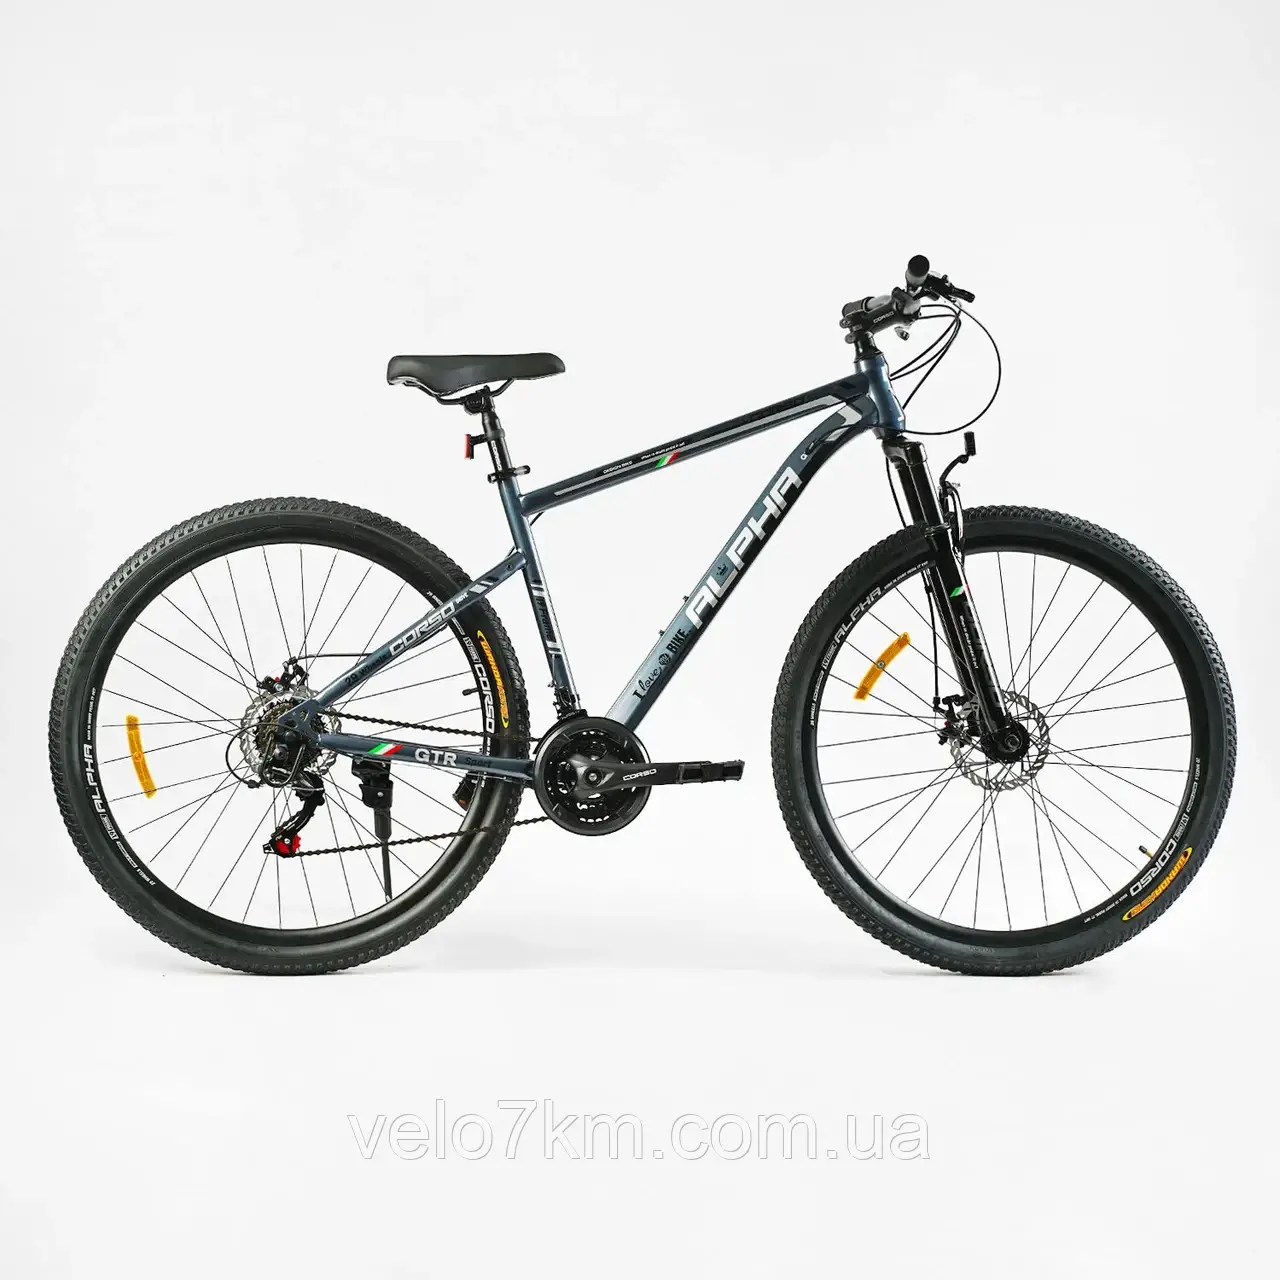 Спортивний велосипед Corso Alpha 29" сталева рама 21" обладнання Shimano 21 швидкість, зібраний на 75%